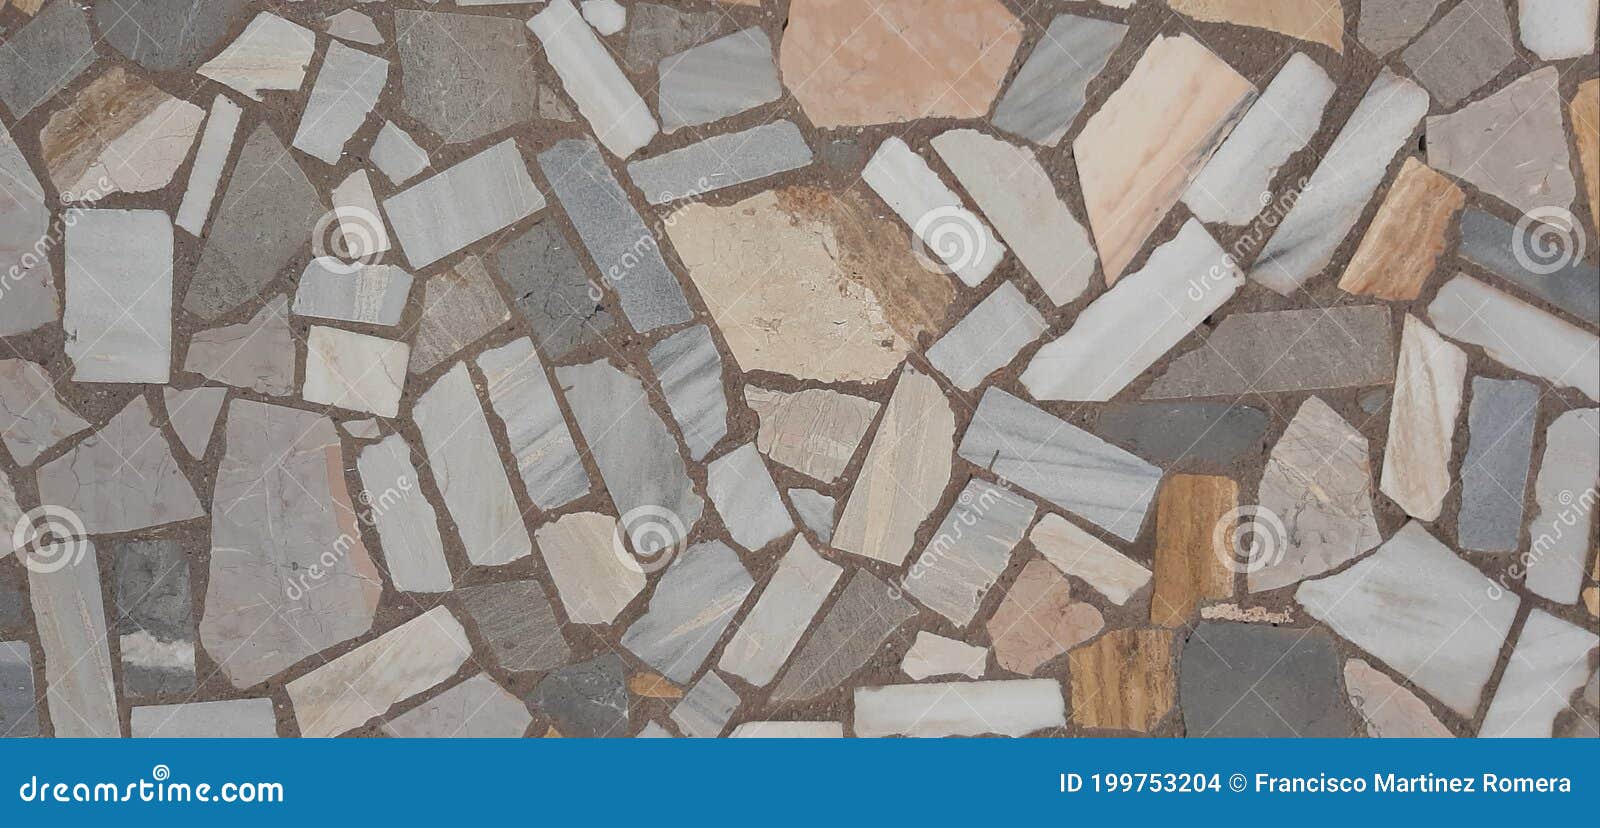 textura de fondo de piedra de mÃÂ¡rmol natural, banner con patrÃÂ³n irregular